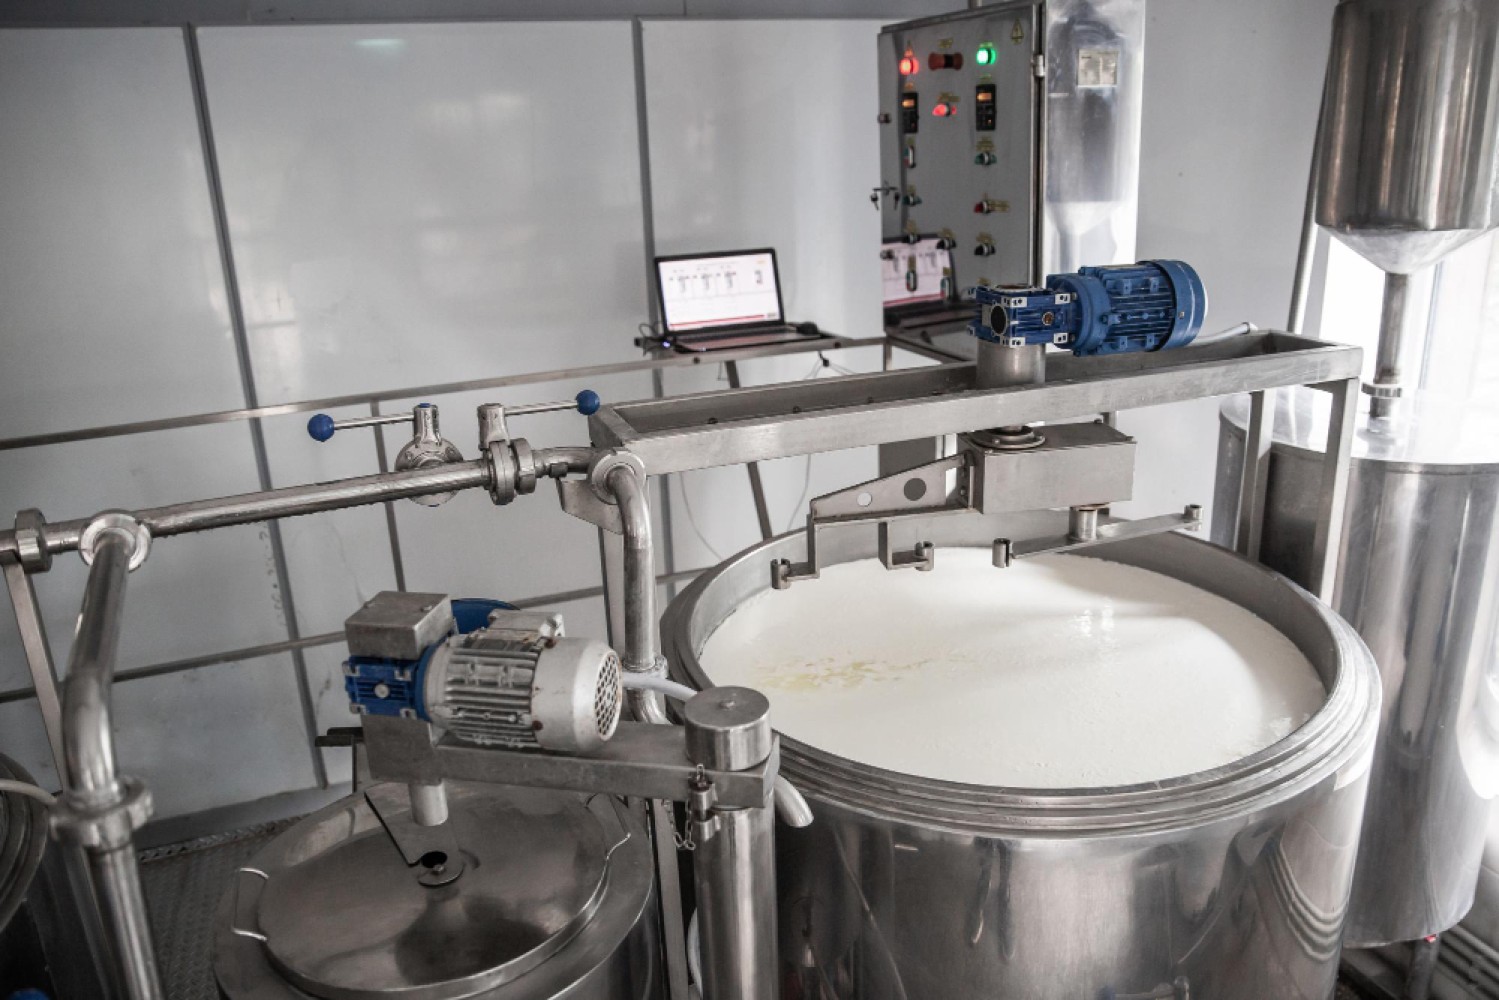 Тепловая обработка молока играет ключевую роль в обеспечении безопасности и качества молочных продуктов. Особенно актуальна пастеризация молока, которая считается наиболее оптимальным методом обработки. В данной статье подробно рассмотрим процесс пастеризации молока в России, его основные методы и оборудование, а также влияние на качество и безопасность молока.